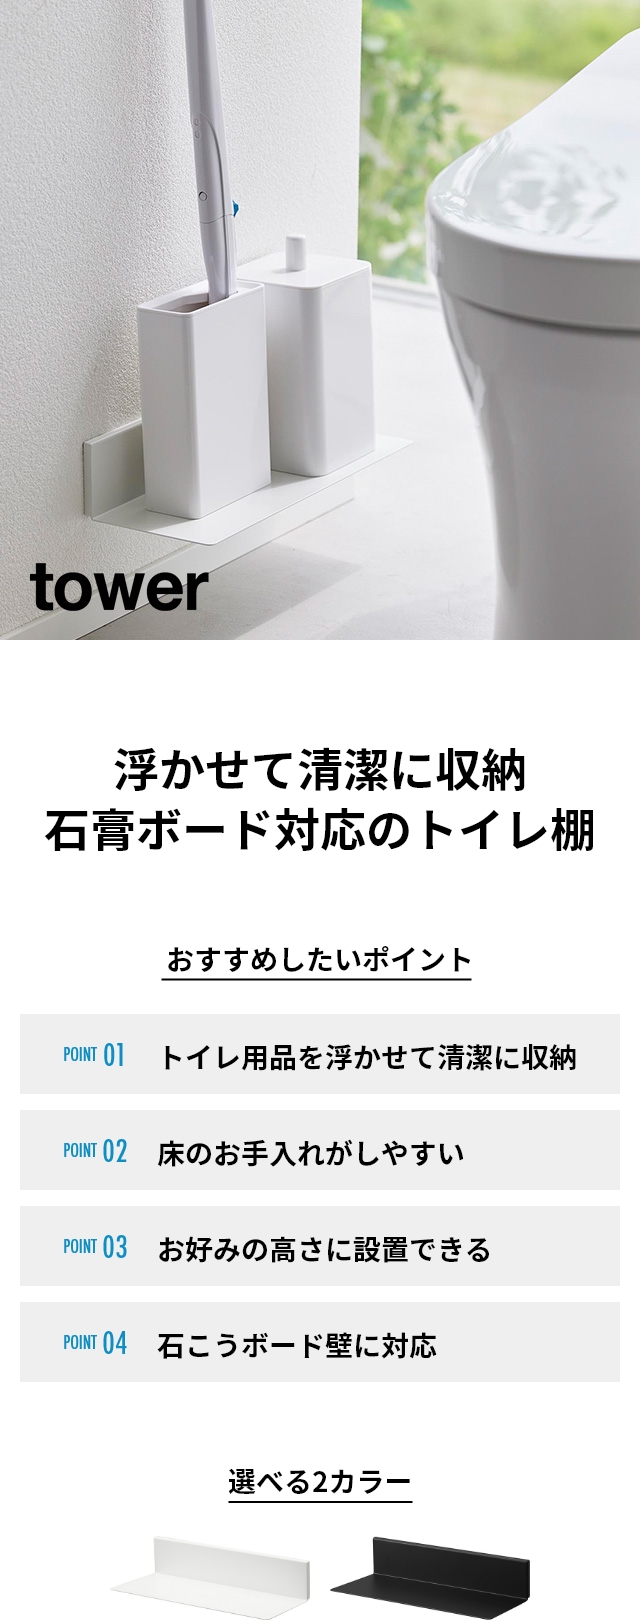 tower (タワー) 石こうボード壁対応浮かせるトイレ棚